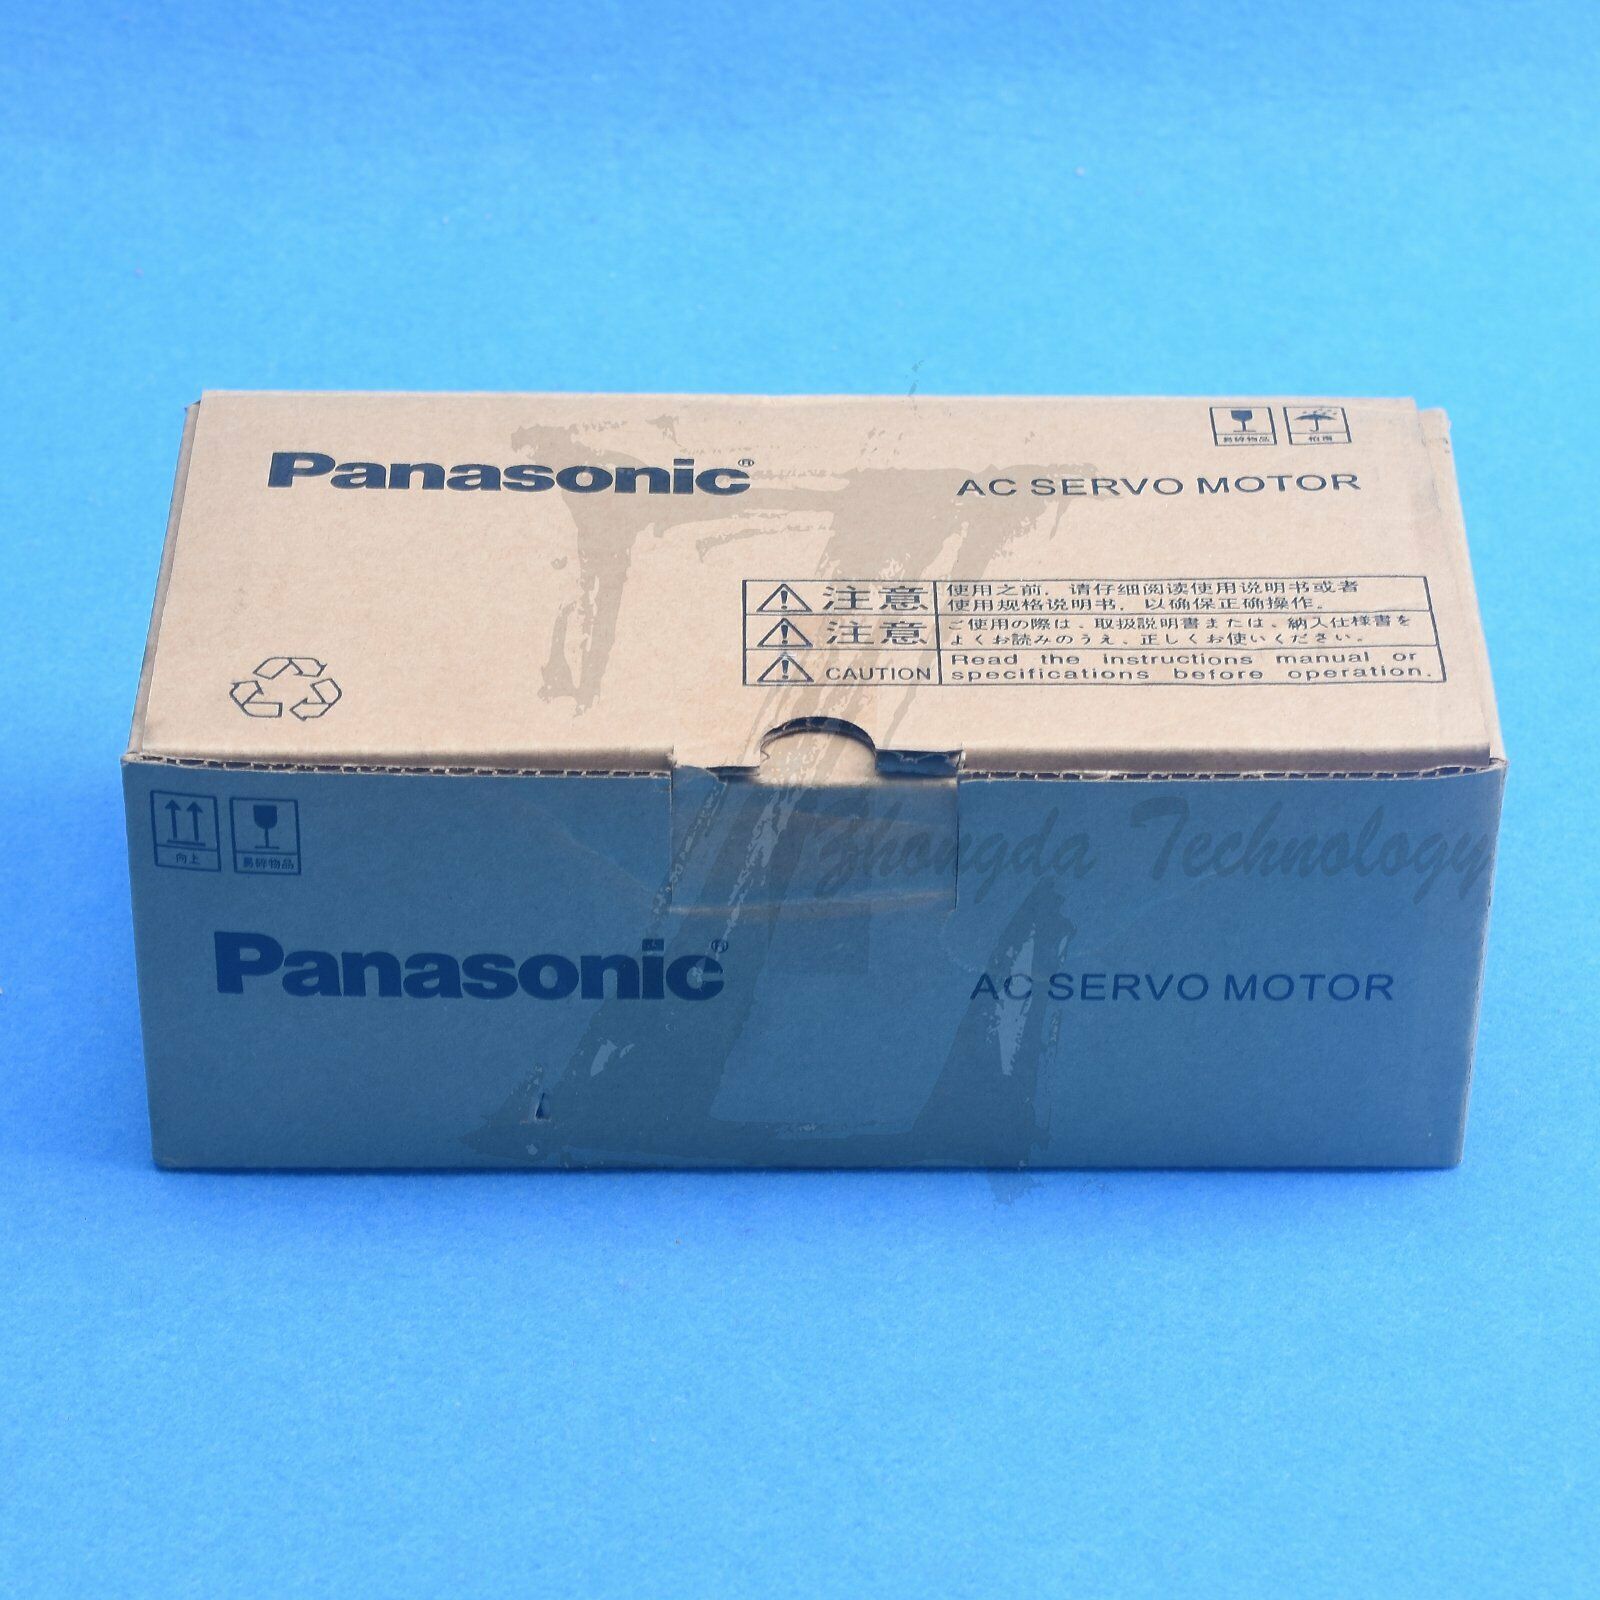 NEW Panasonic MSMA042A1B AC servo motor